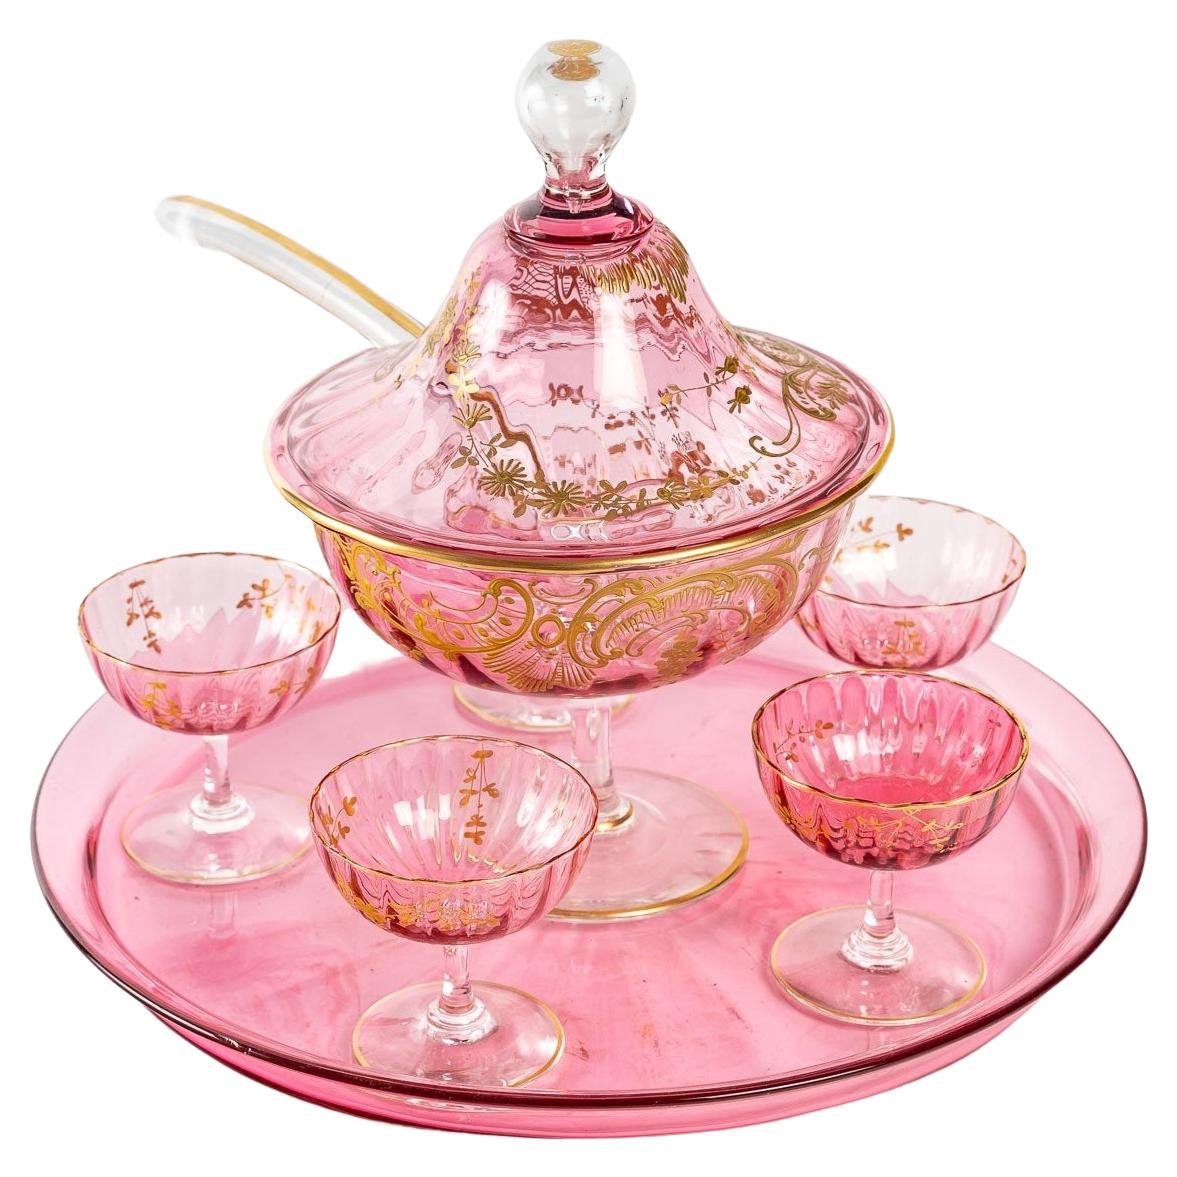 Service de table en cristal rose, XIXe siècle